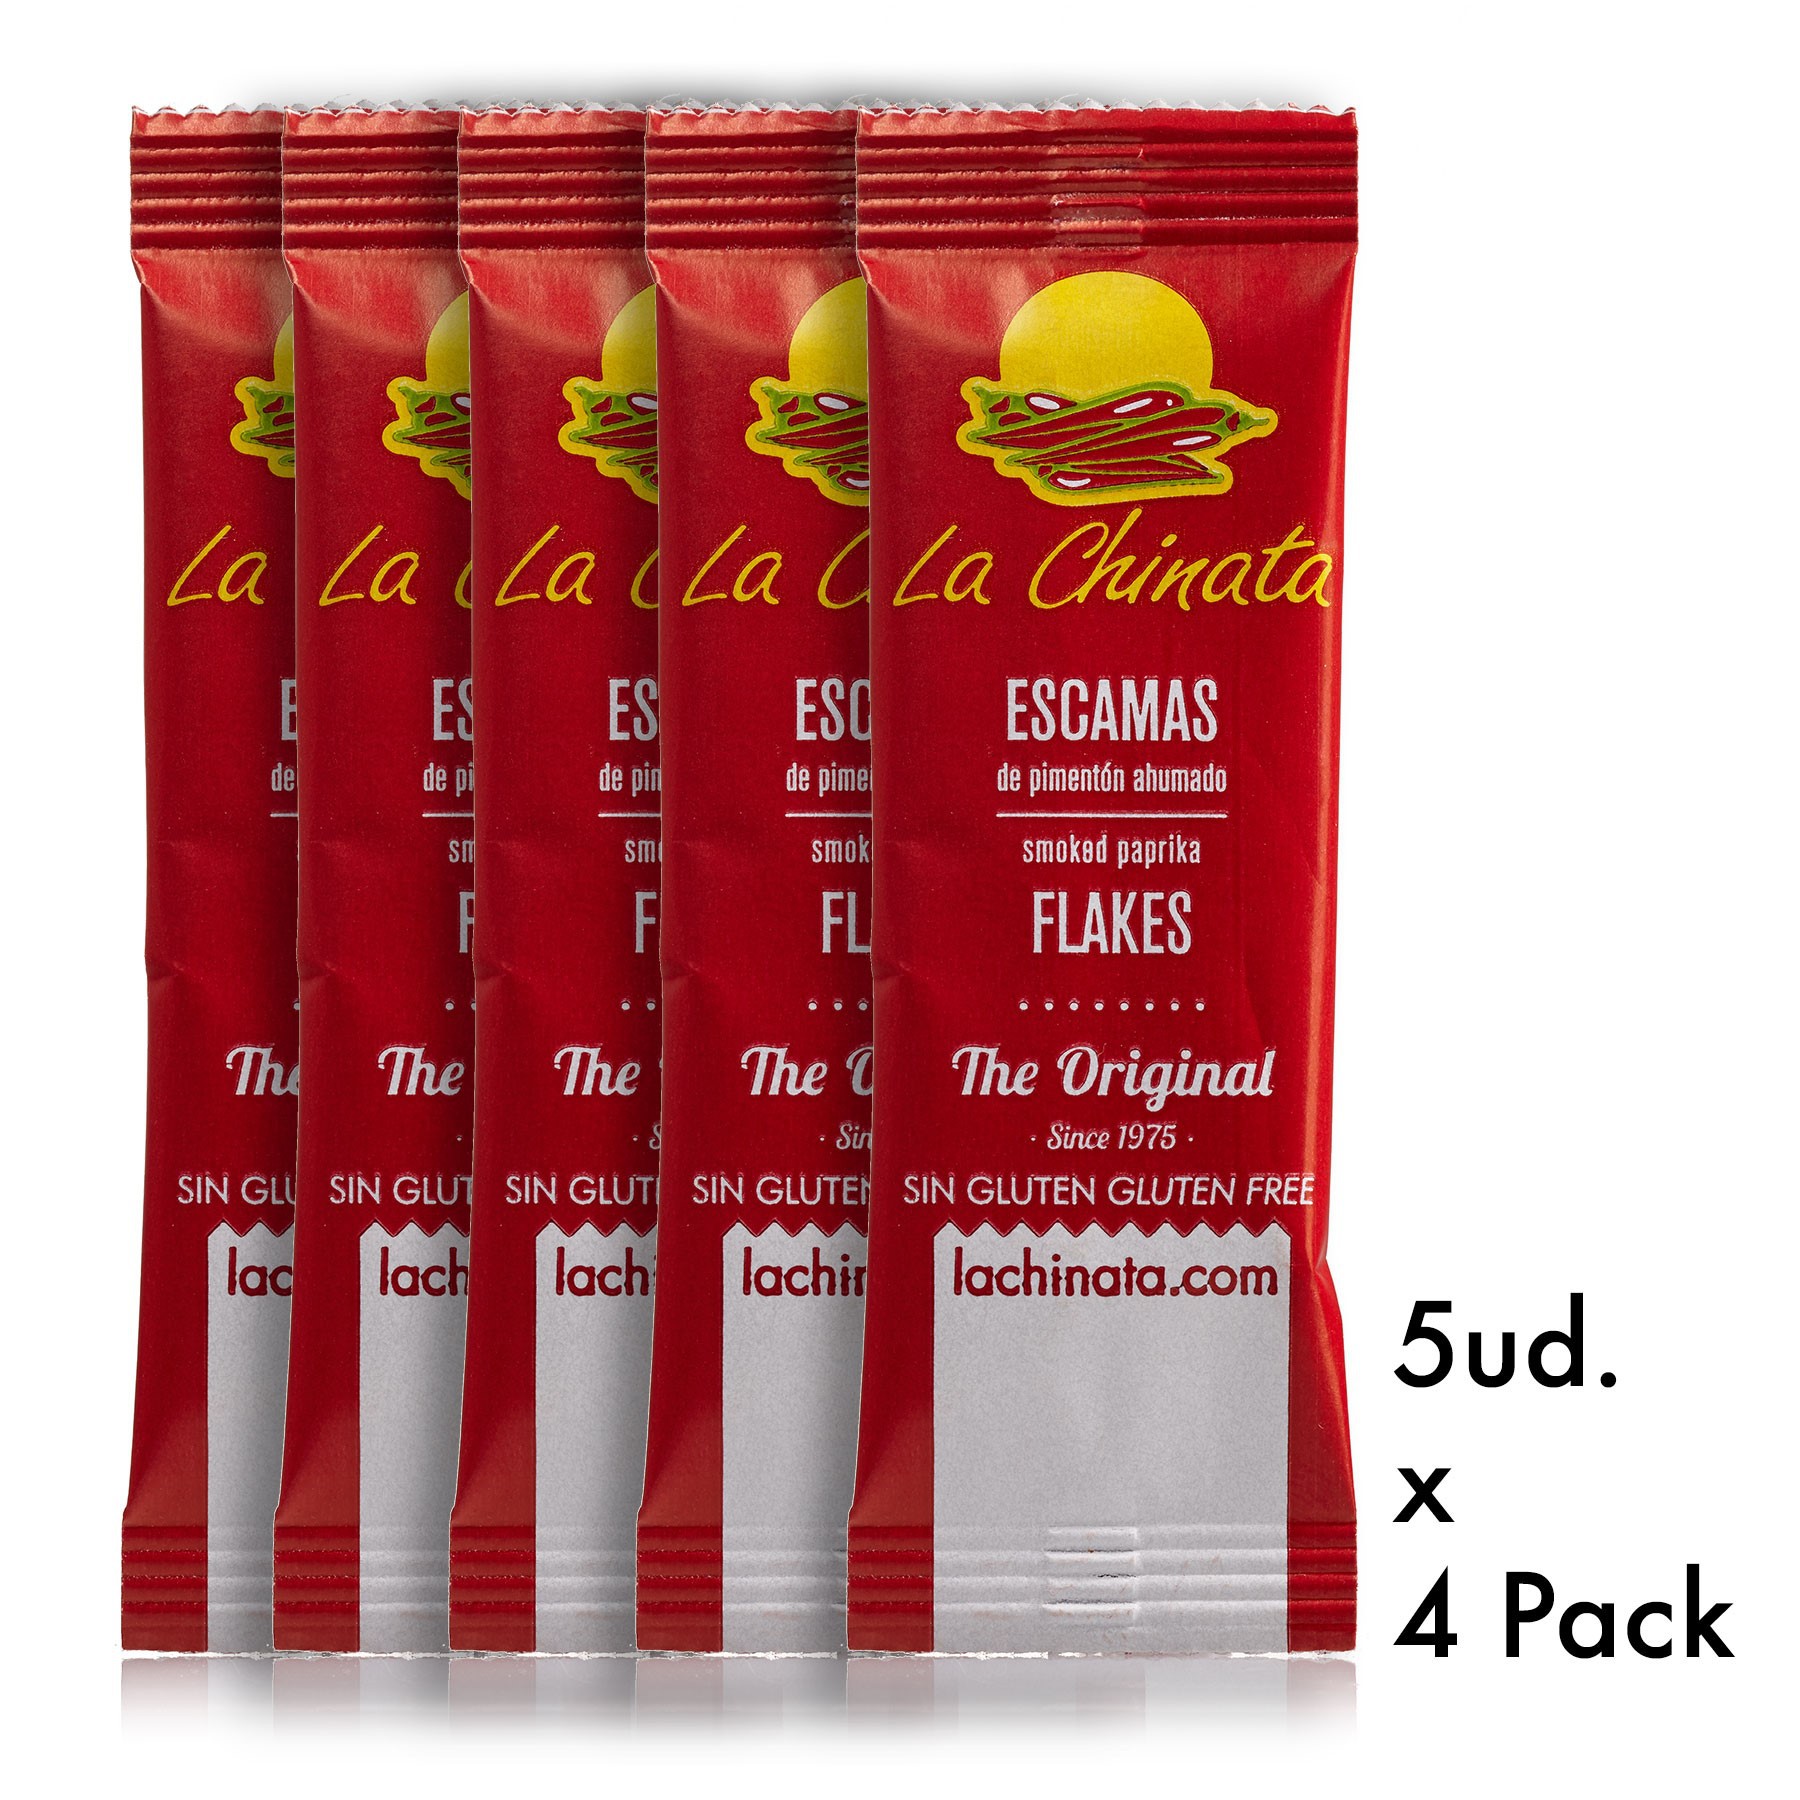 4 Packs de 5 monodosis 1g Escamas de Pimentón Ahumado "La Chinata" Dulce